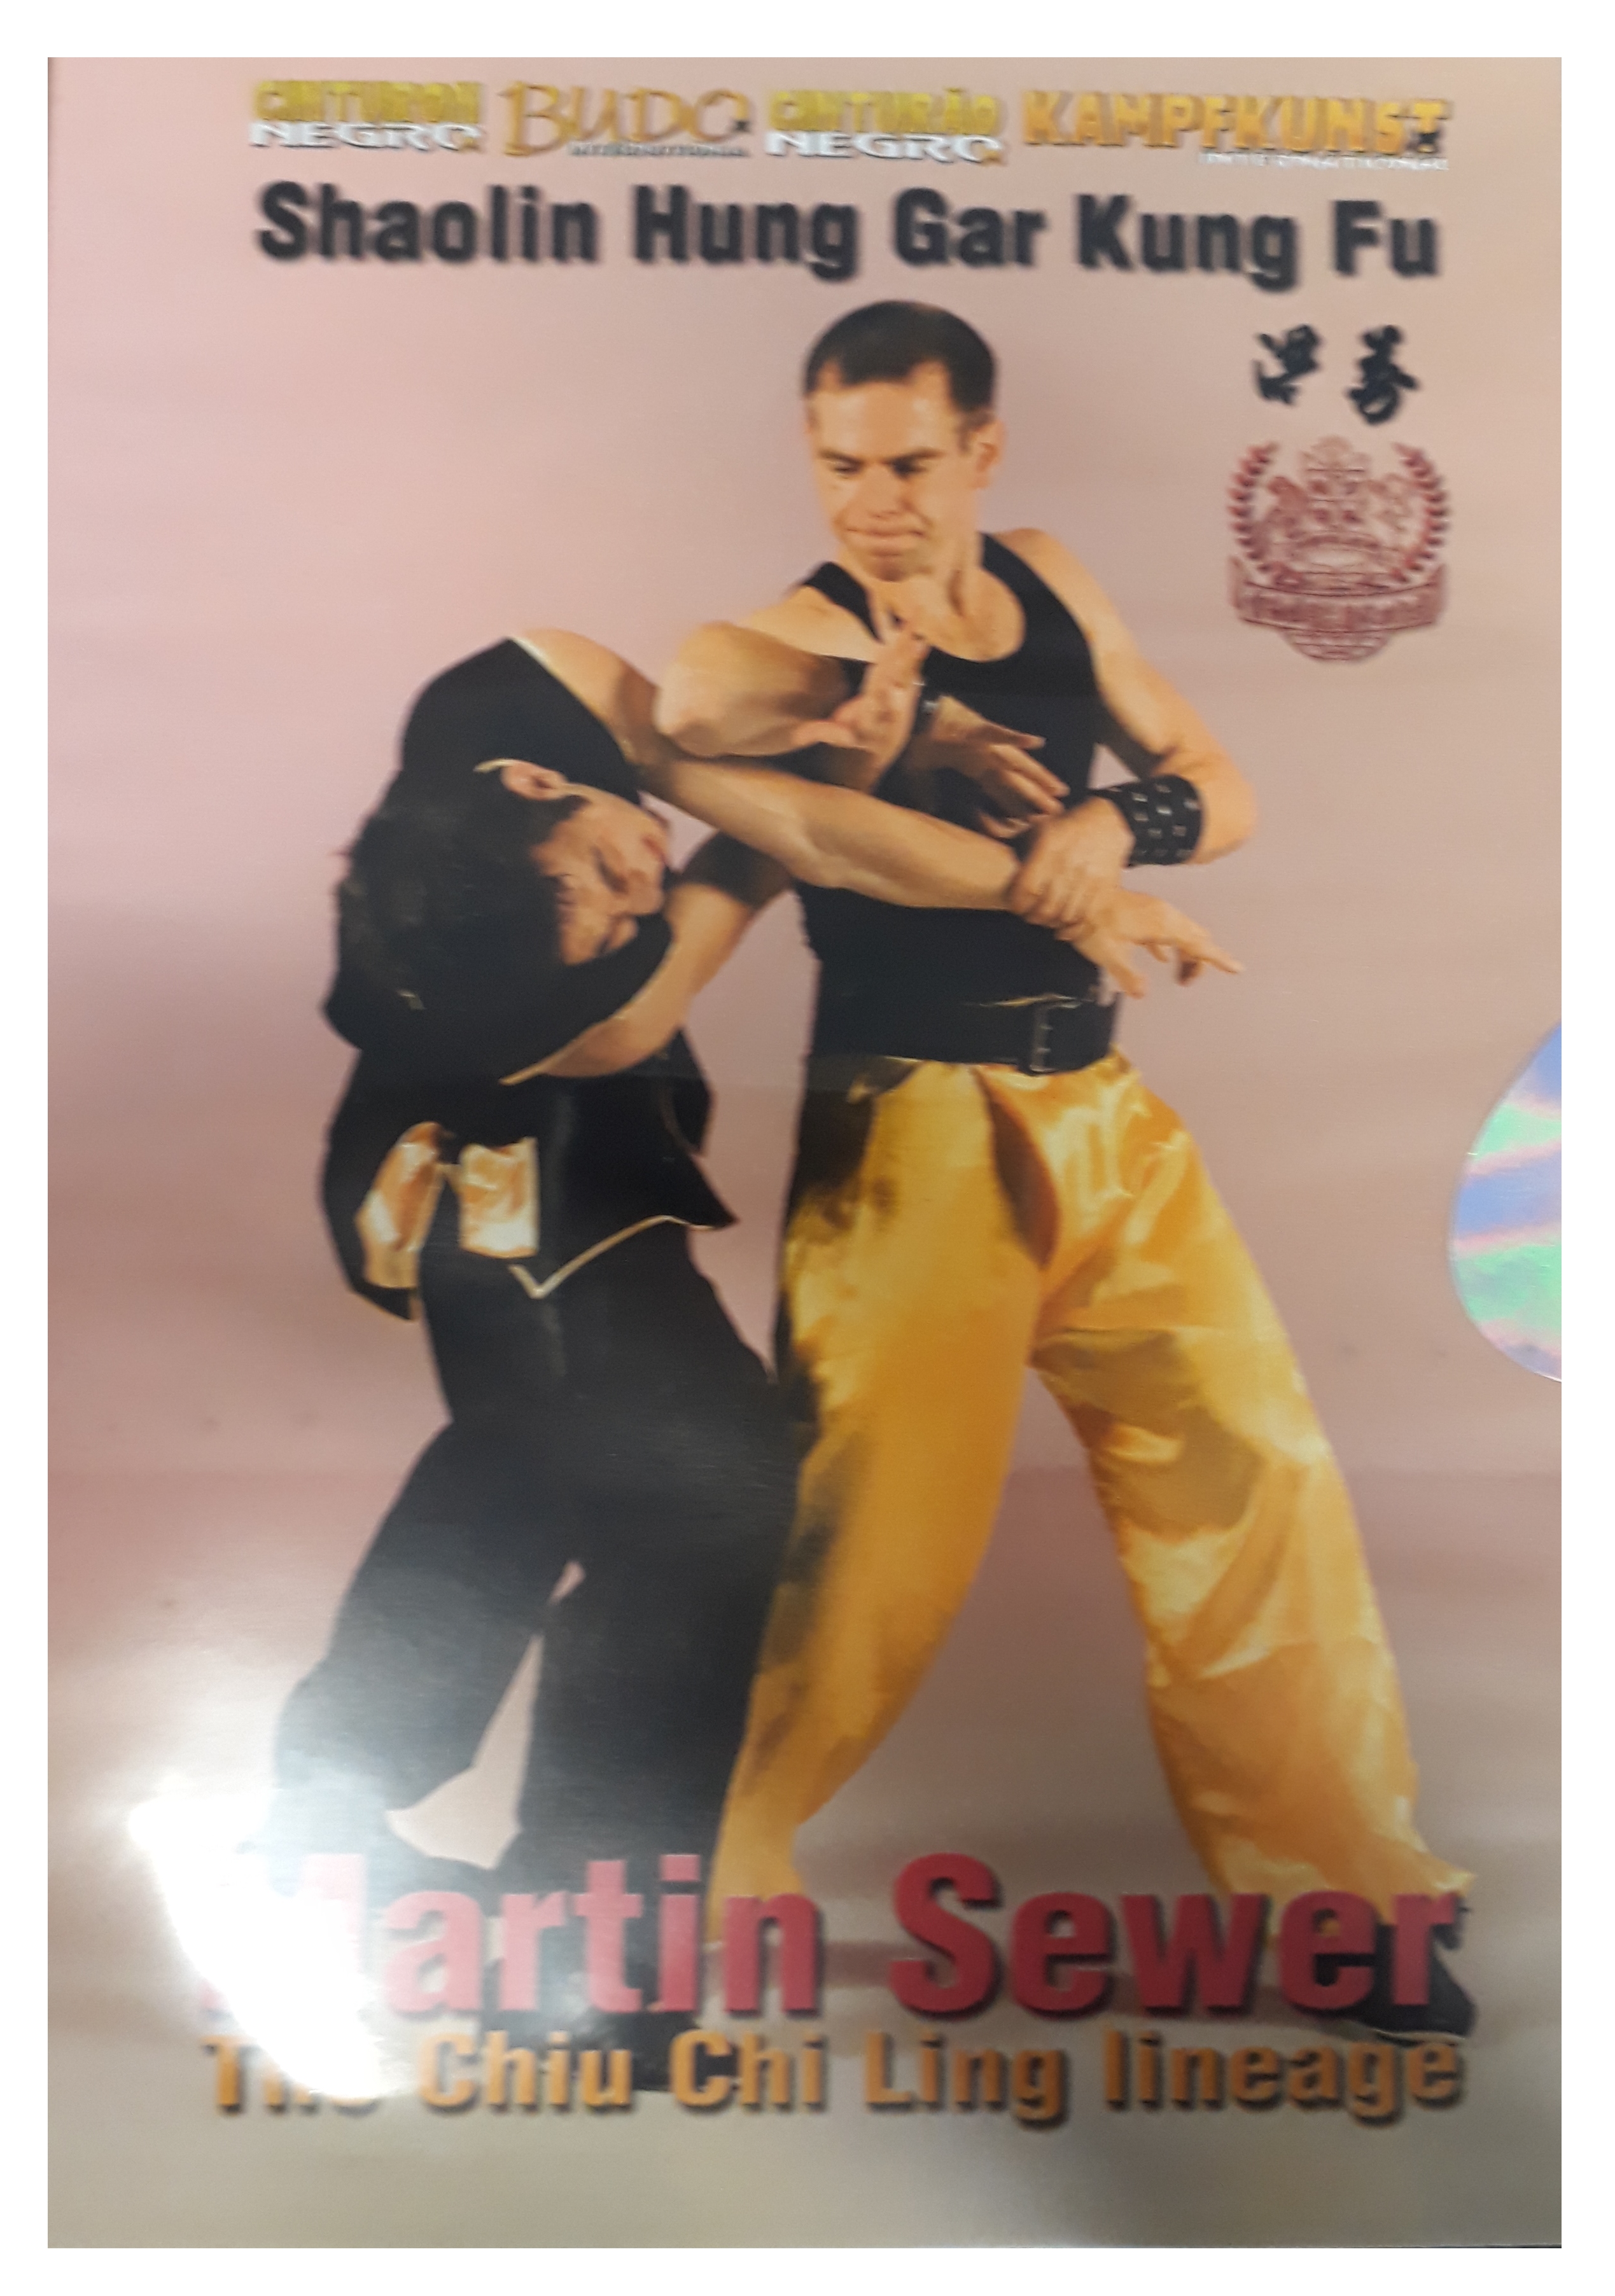 DVD Shaolin Hung Gar Kung Fu - The Chiu Chi Ling lineage